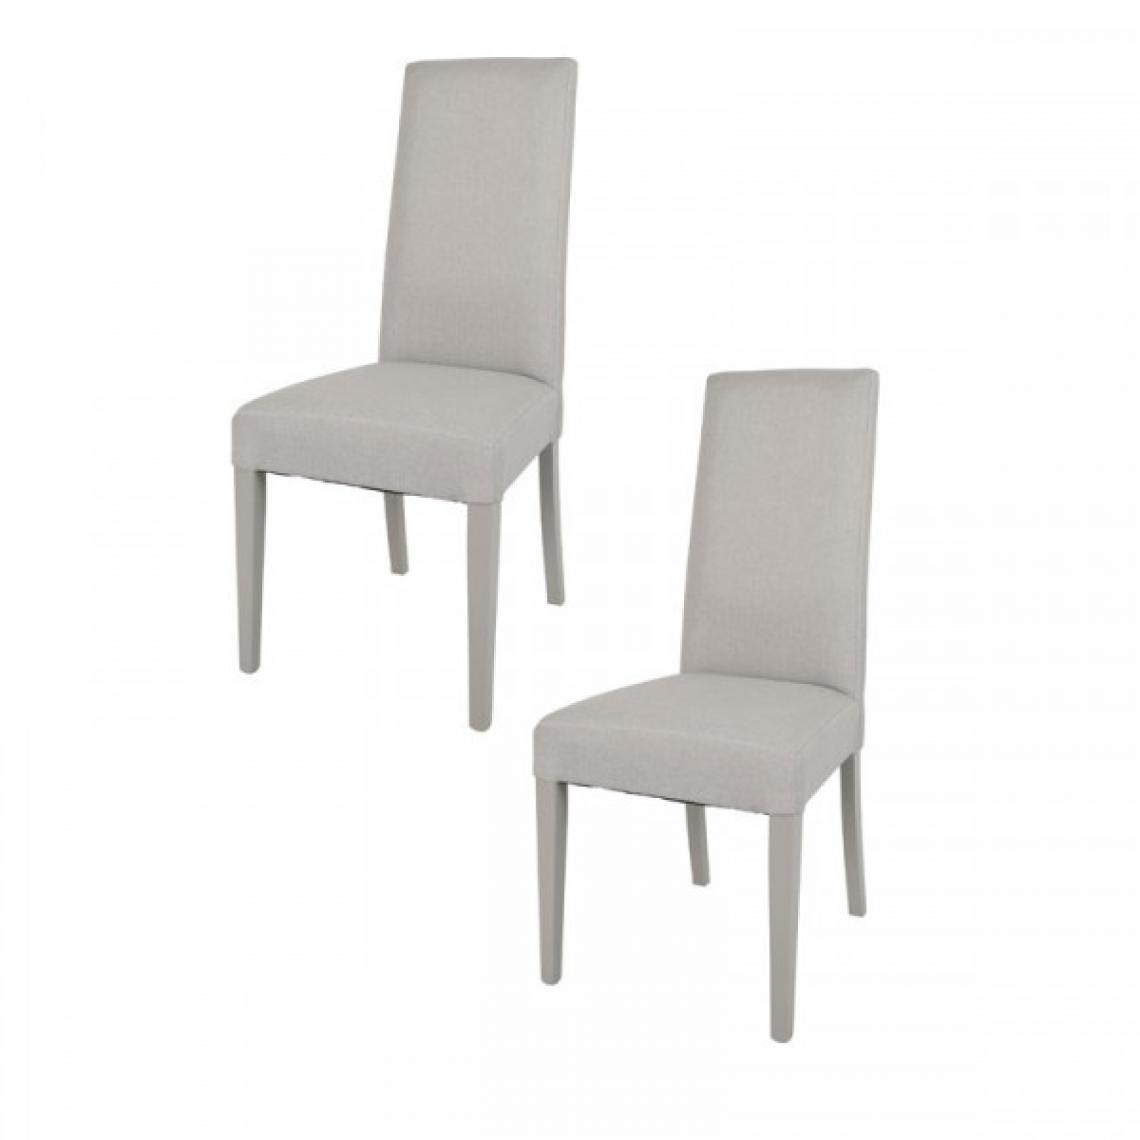 Dansmamaison - Duo de chaises tissu Gris clair - PISE - L 54 x l 46 x H 99 cm - Chaises